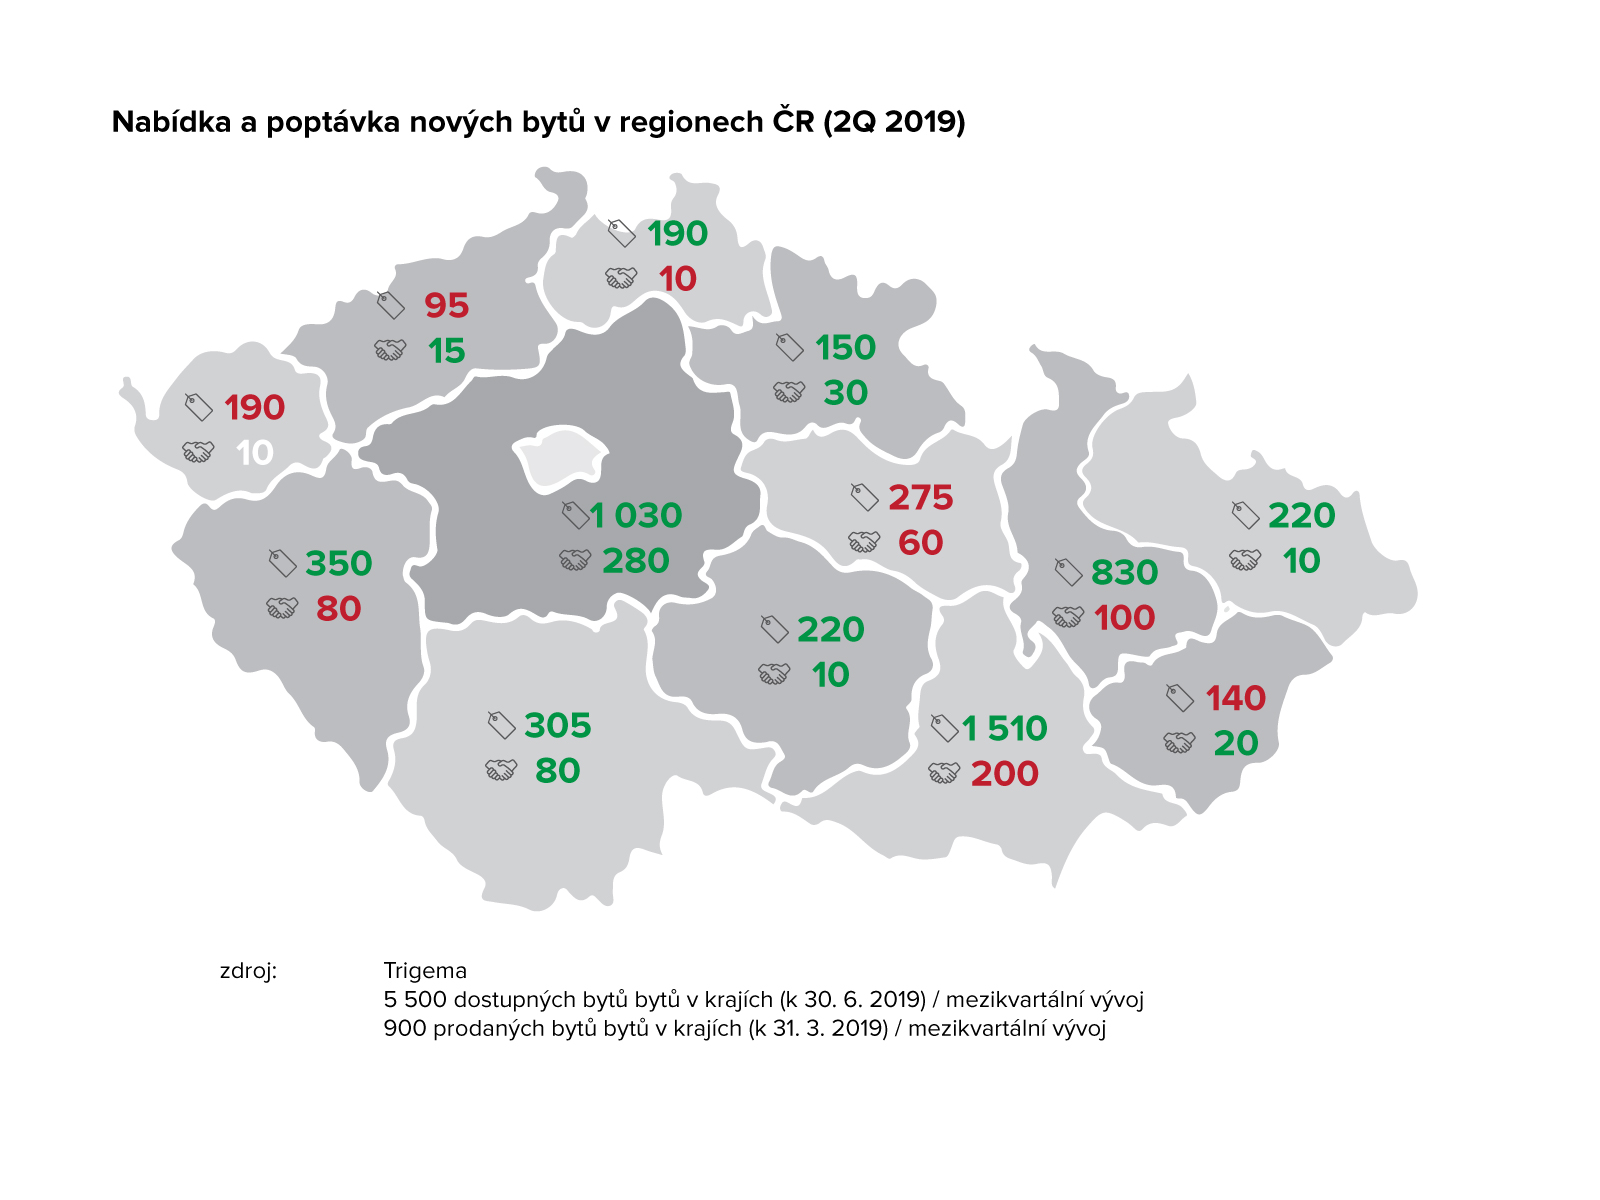 Nabídka a poptávka nových bytů v regionech ČR 2Q 2019